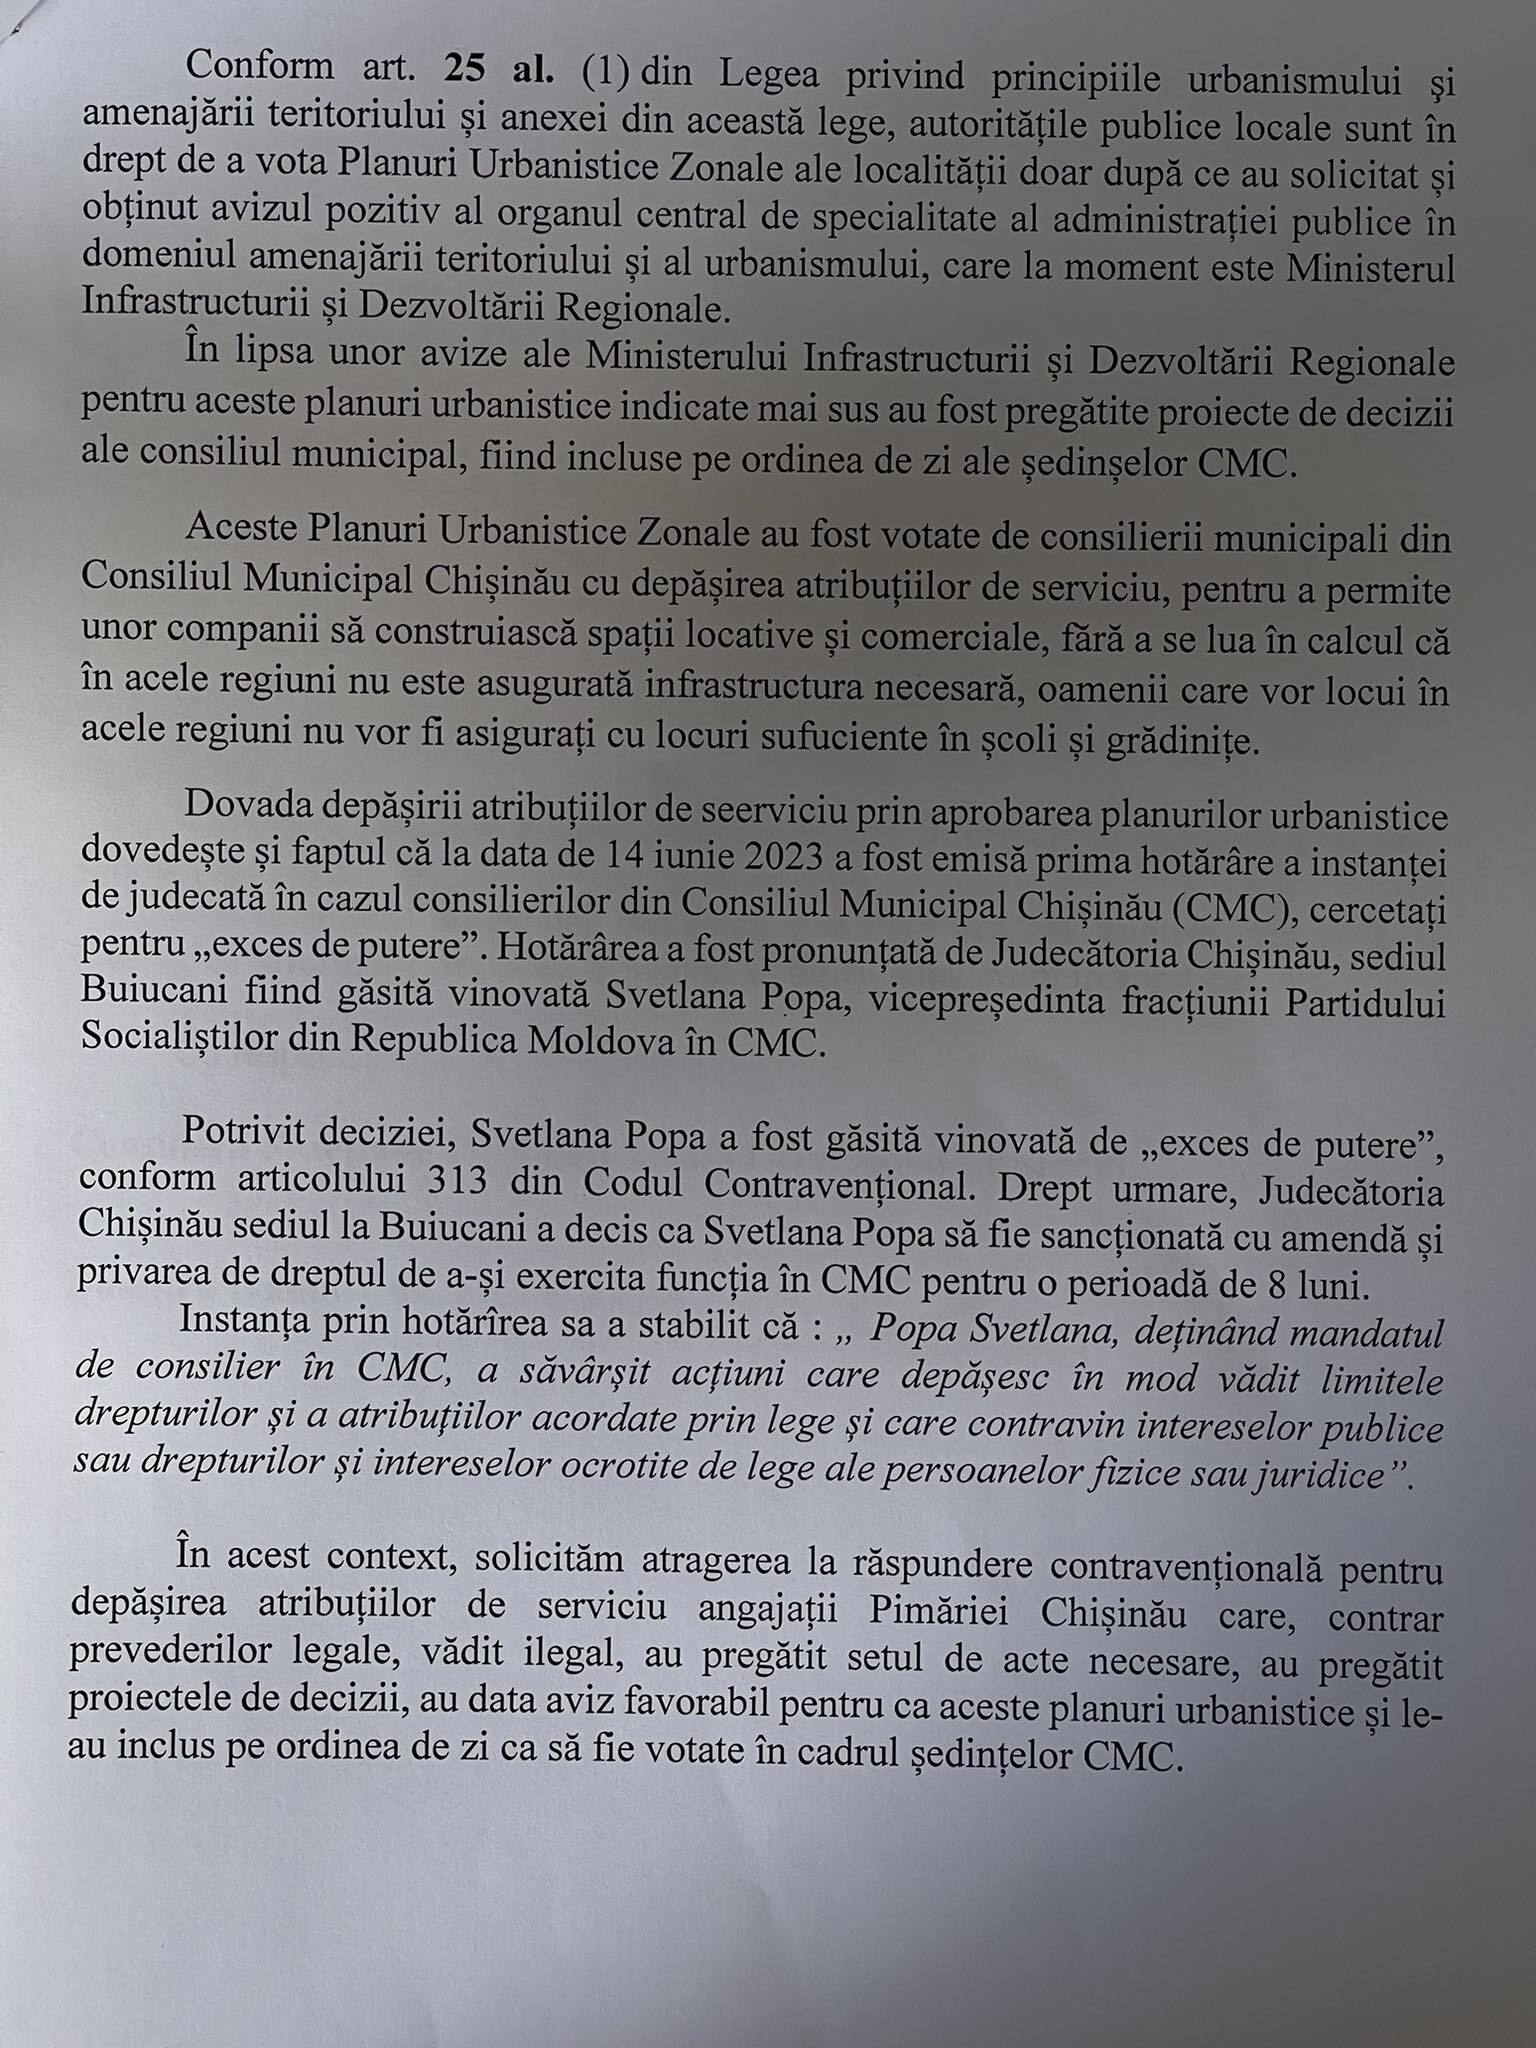 PAS, denunț la CNA: cere atragerea la răspundere a funcționarilor din Primăria Chișinău, implicați în acte de corupție